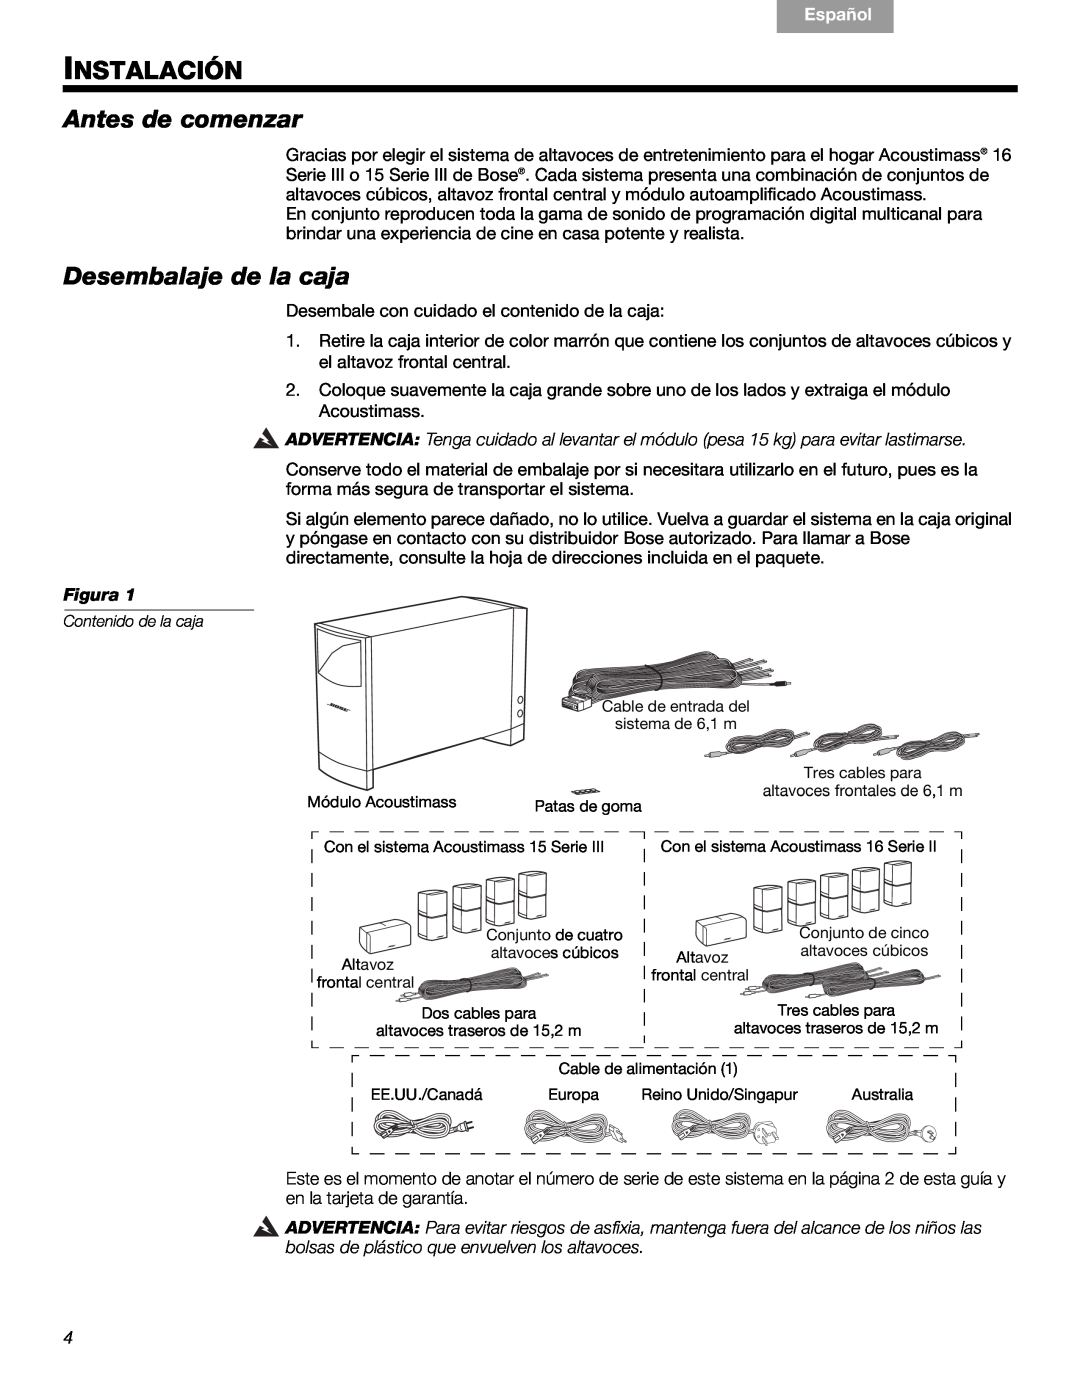 Bose 16, 15 manual Instalación, Antes de comenzar, Desembalaje de la caja, Figura, Français, Español, English 